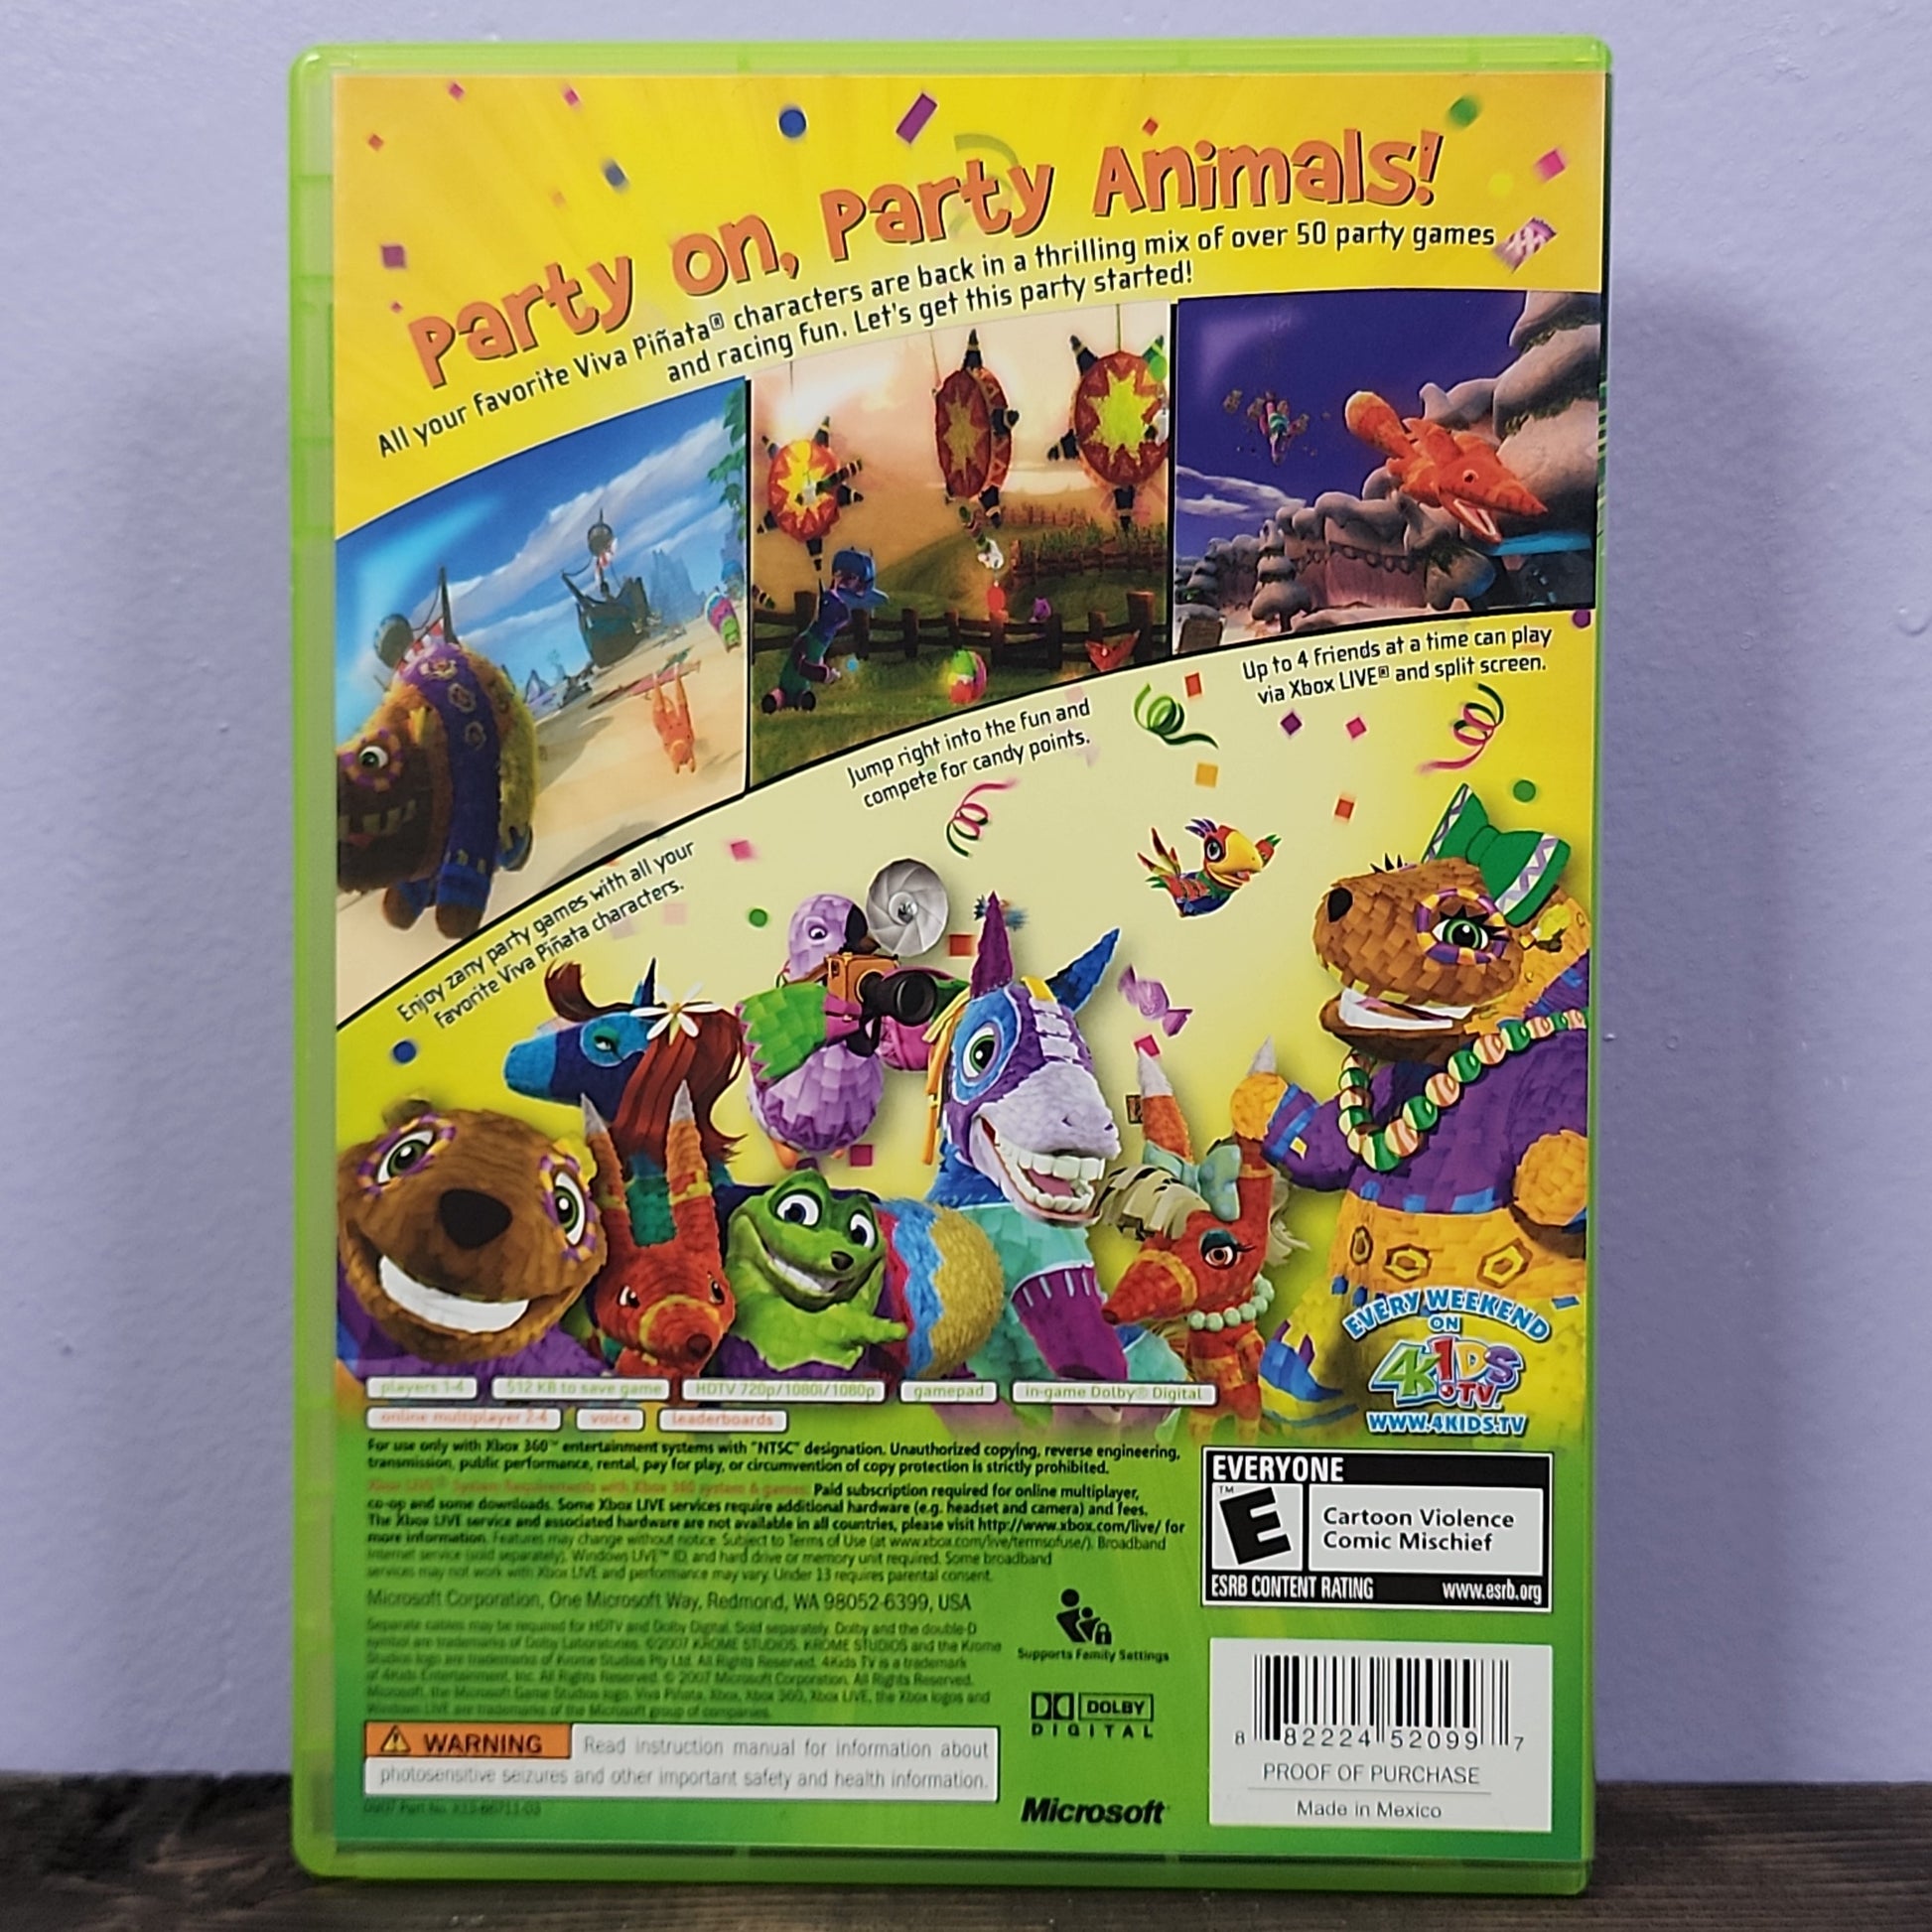 Xbox 360 - Viva Pinata: Party Animals Retrograde Collectibles CIB, E Rated, Krome Studios, Microsoft Game Studios, Minigames, Party Game, Simulation, Viva Pinata, Preowned Video Game 